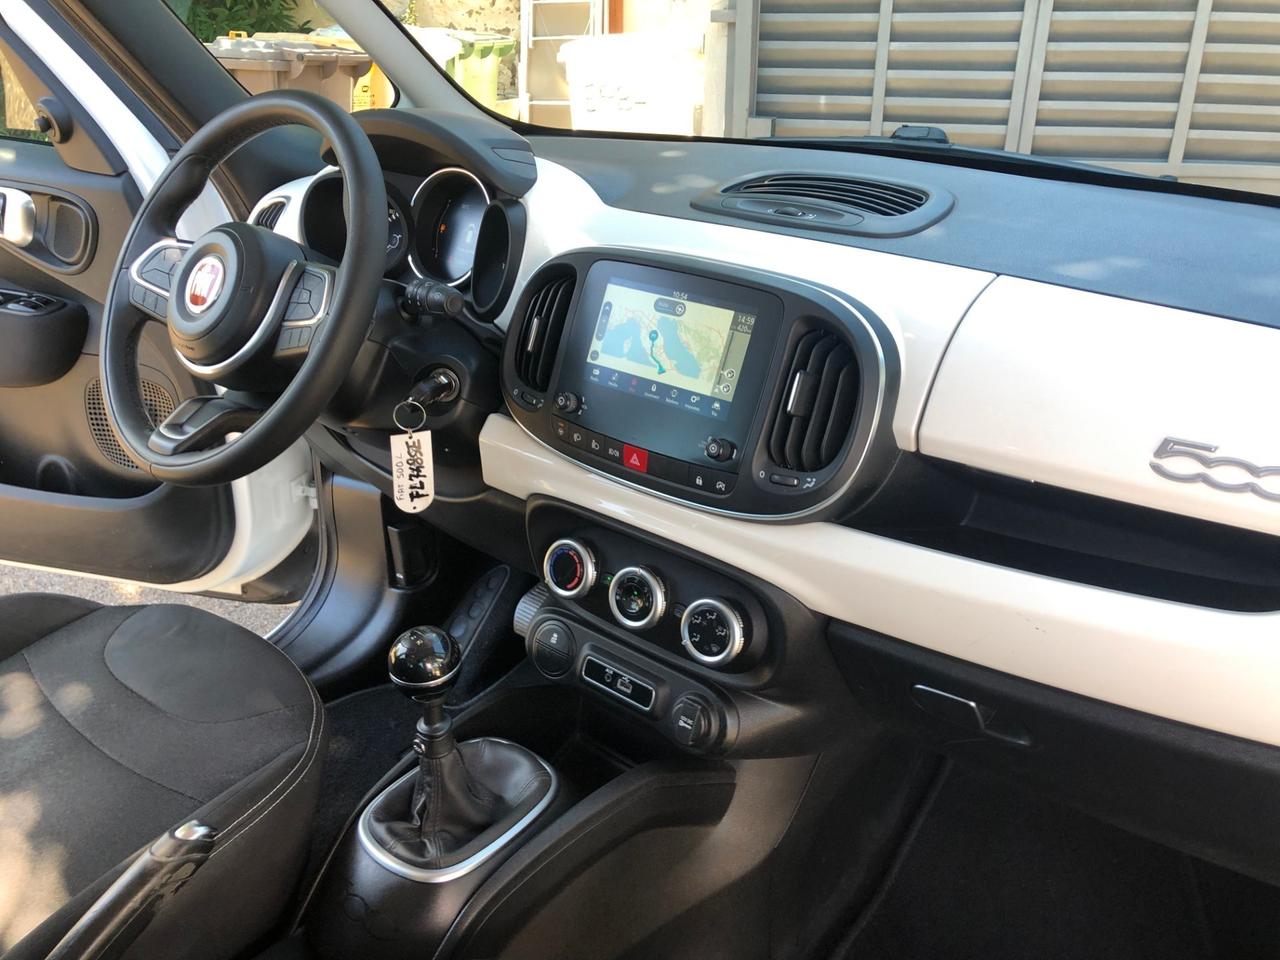 Fiat 500L 1.3 Multijet 95 CV New Model Navi.Sat. Bluetooth